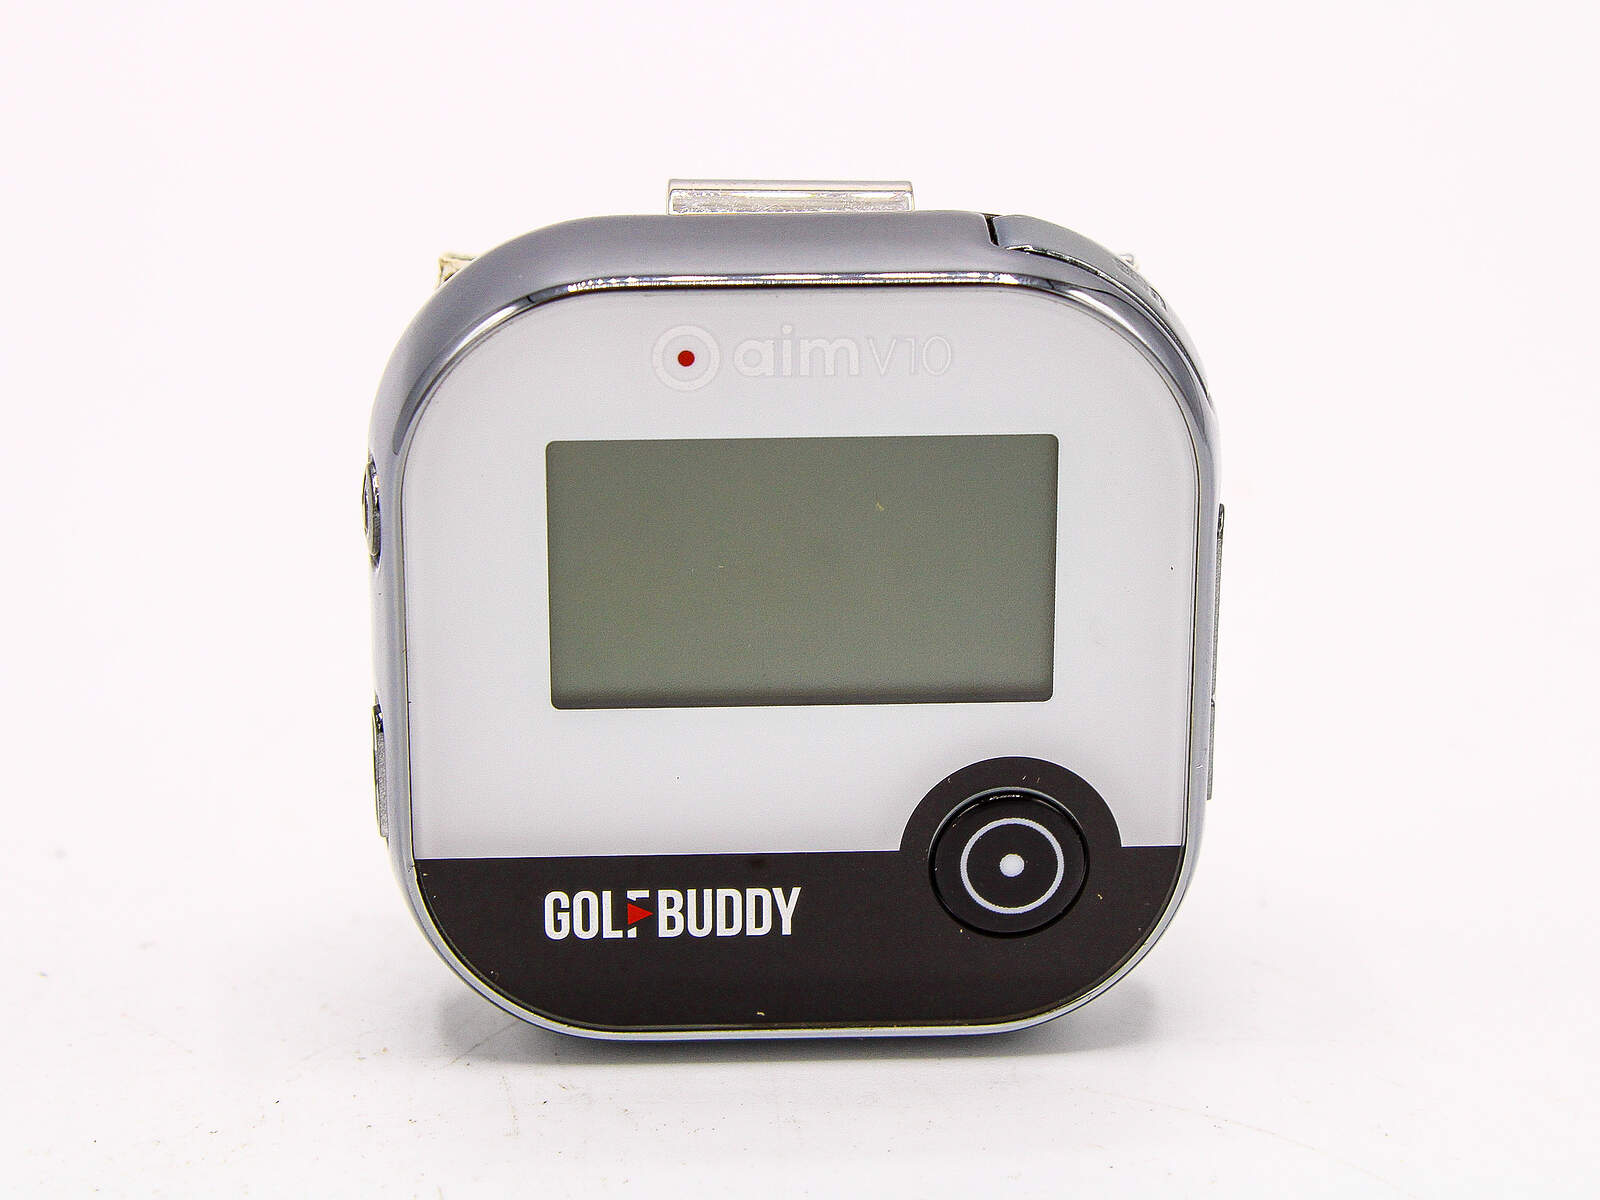 Golf Buddy aim W10 Watch GPS Unit - Golf Gear Upgrades